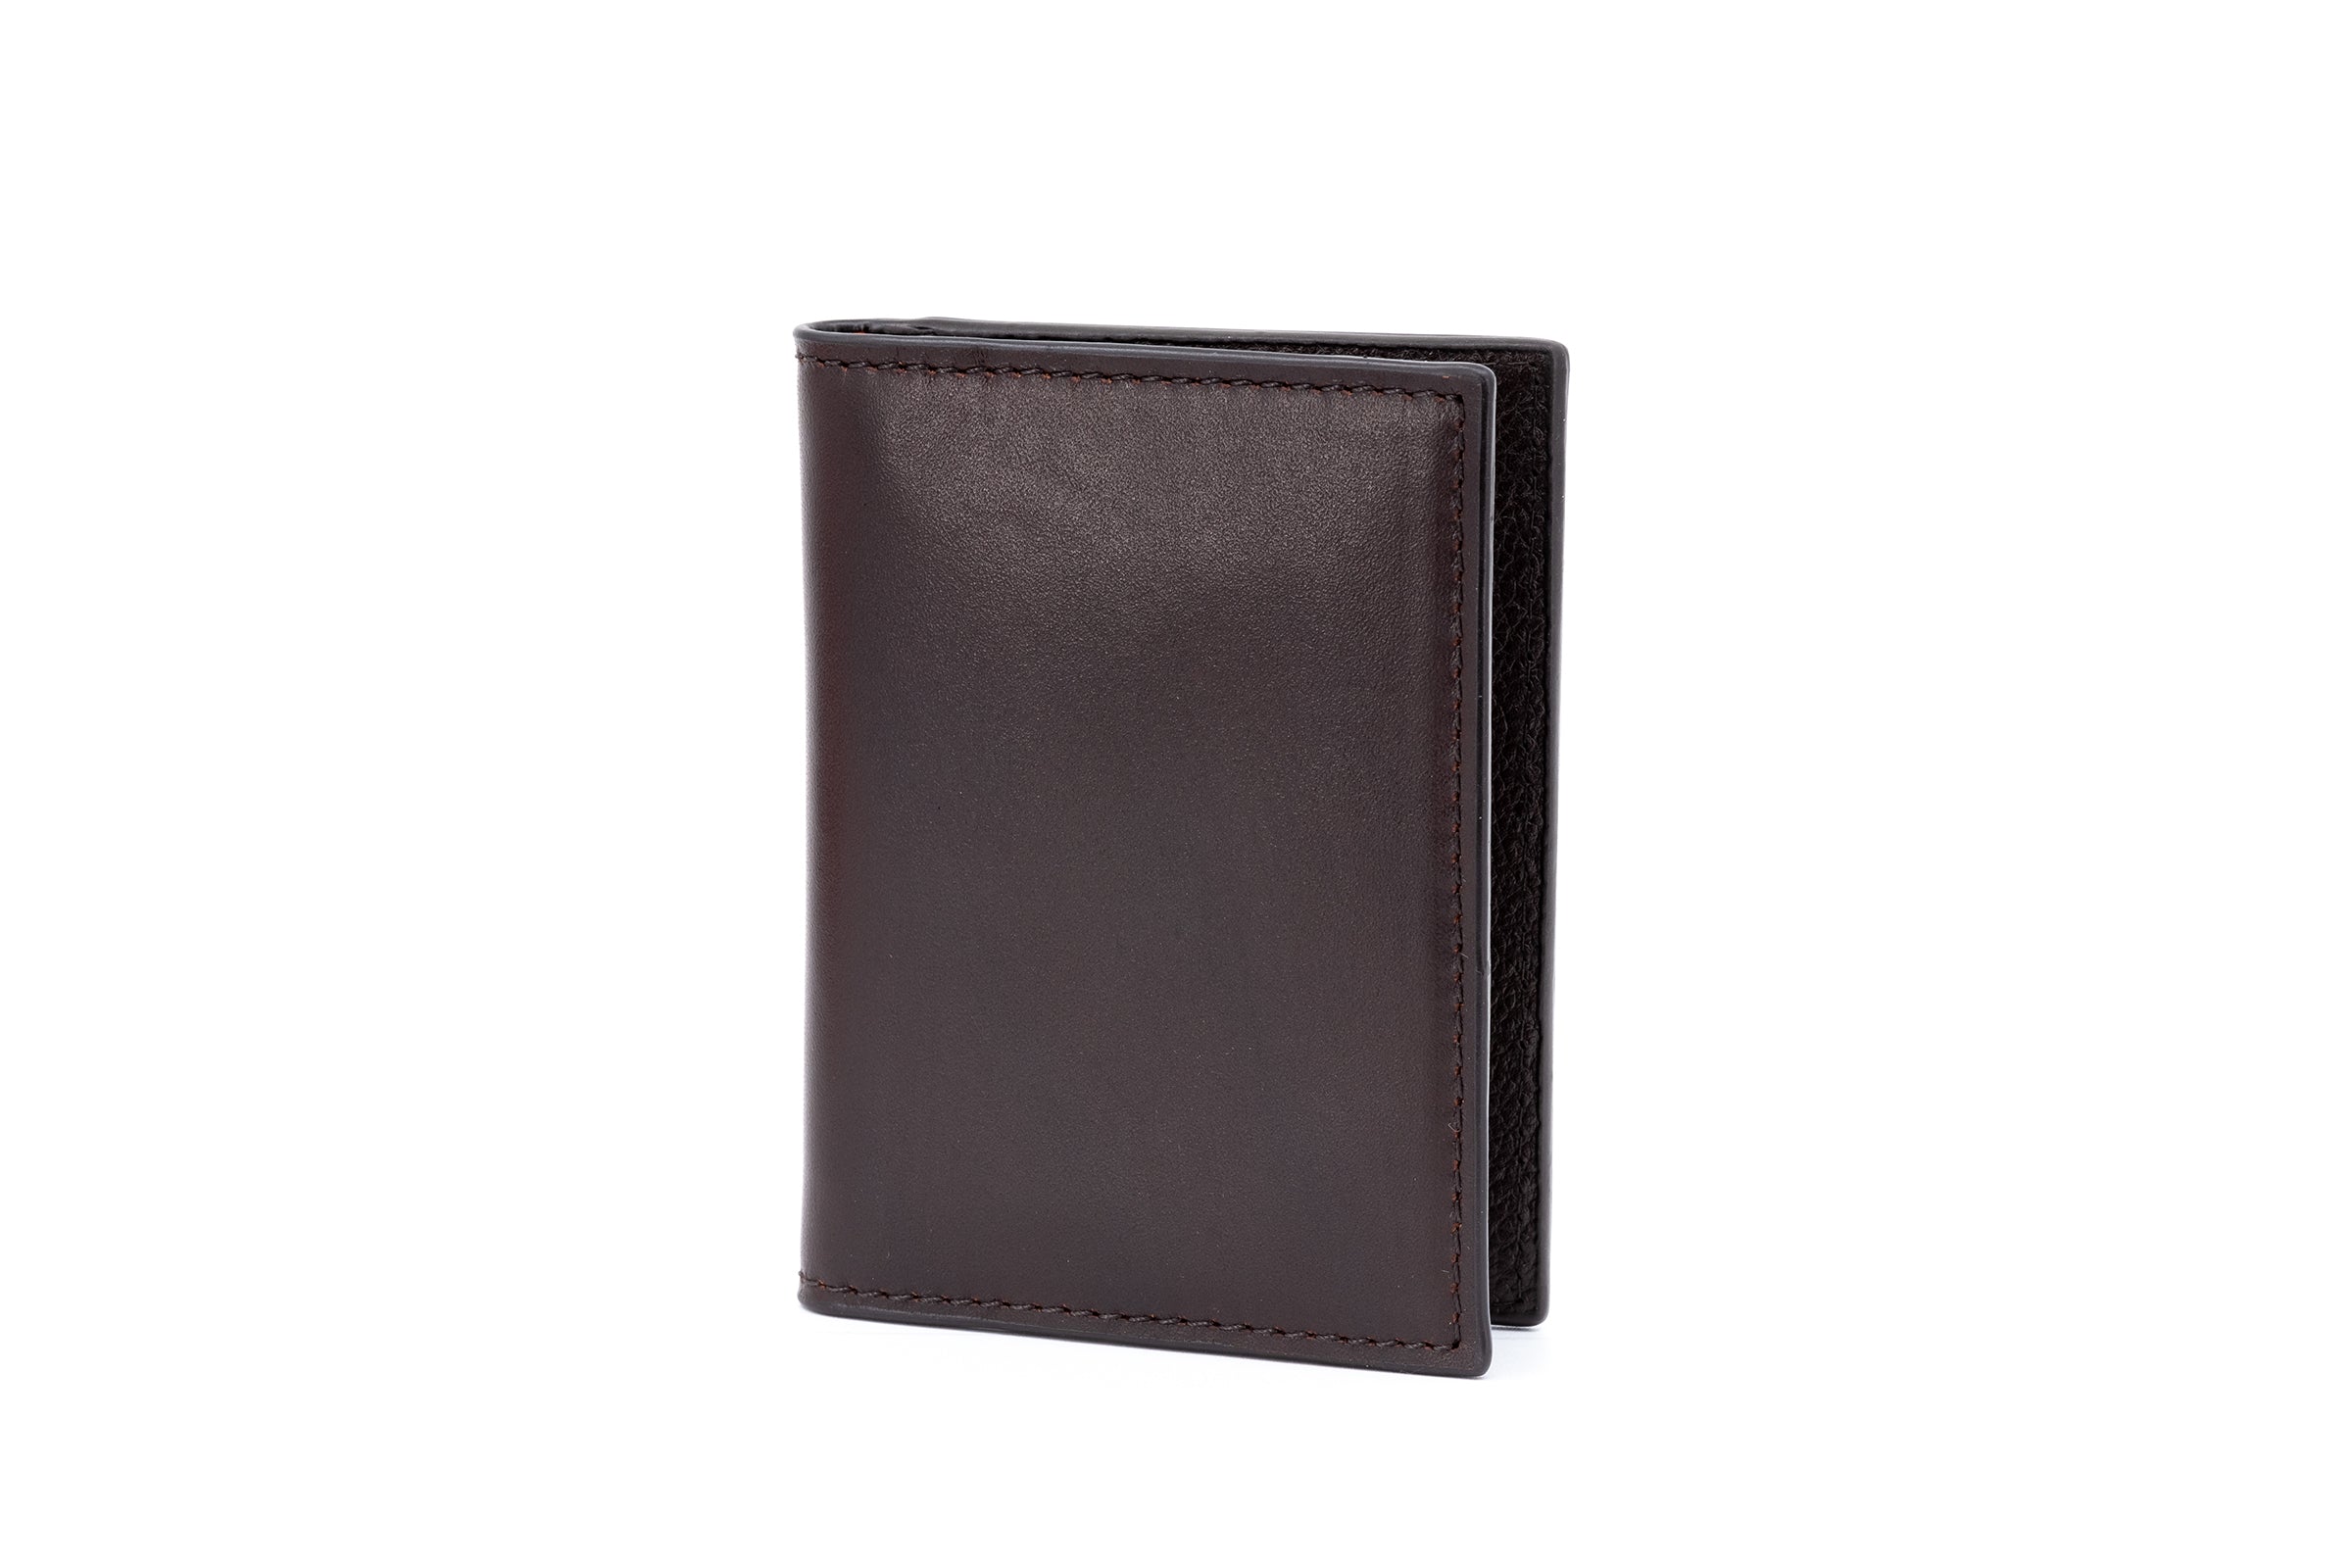 Edward Saddle Leather ID Wallet - Chocolate